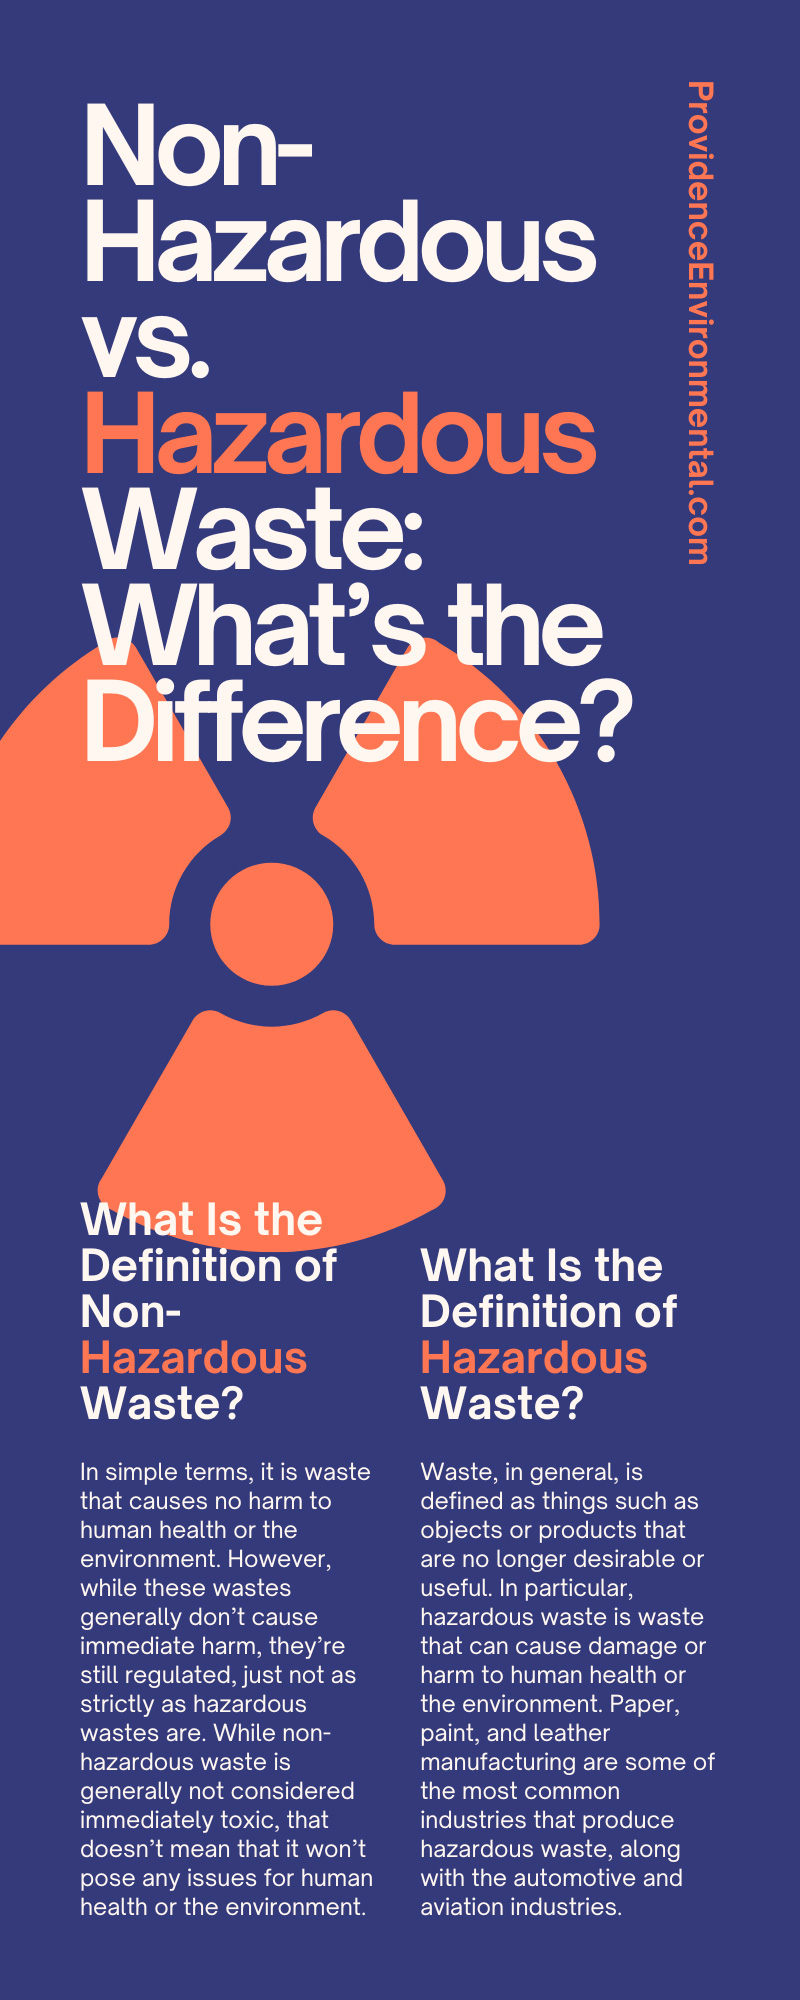 Non-Hazardous vs. Hazardous Waste: What’s the Difference?